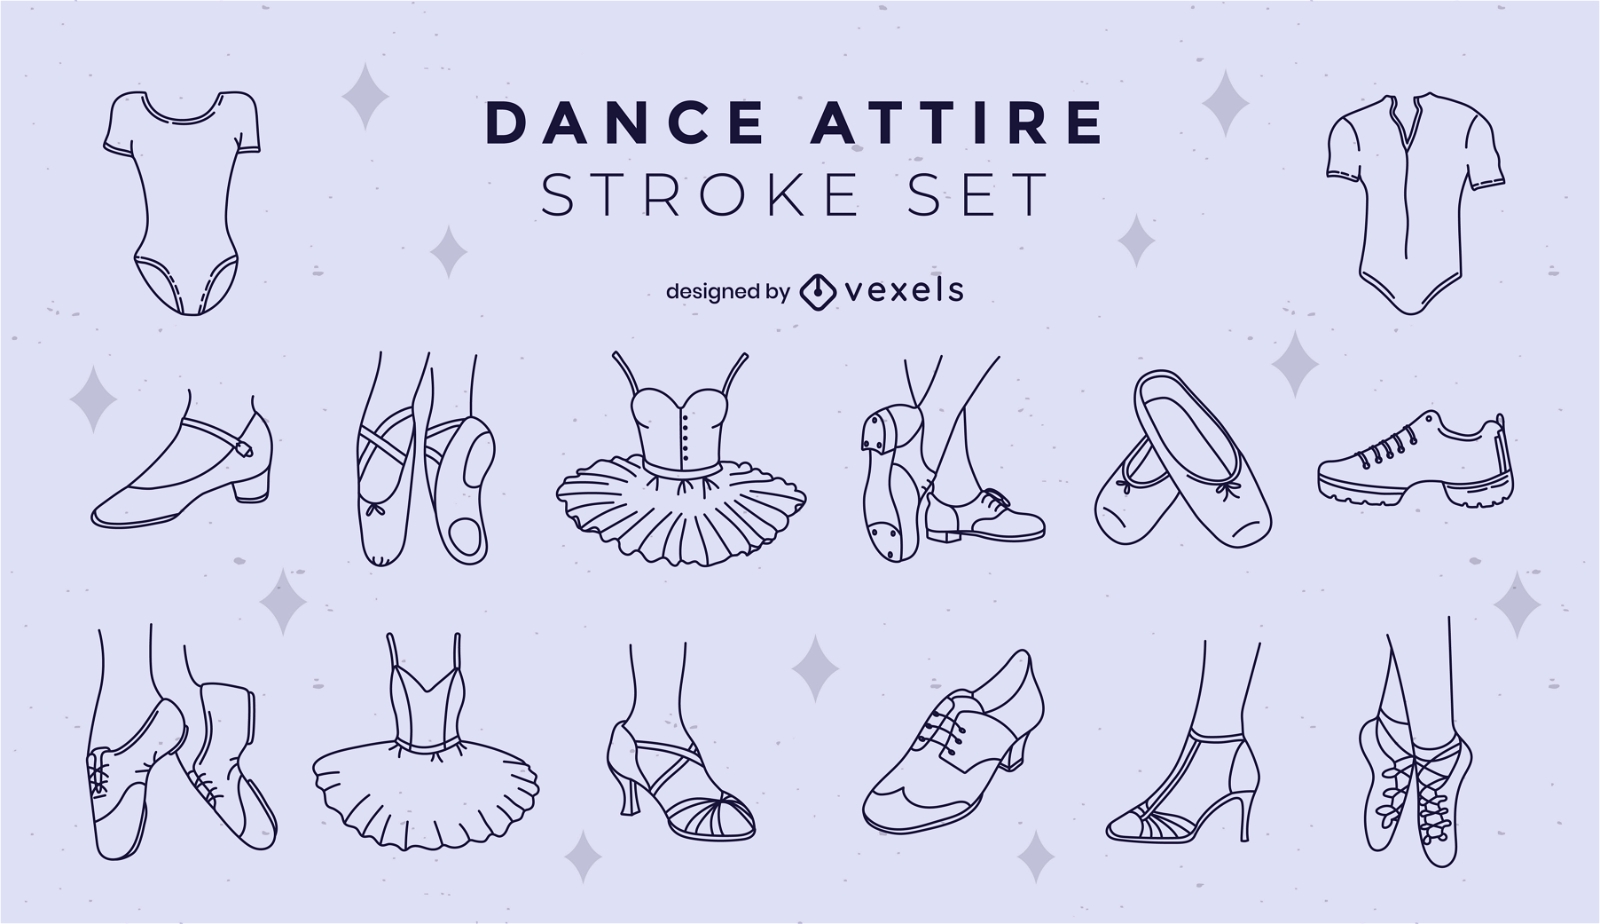 Dance attire stroke set